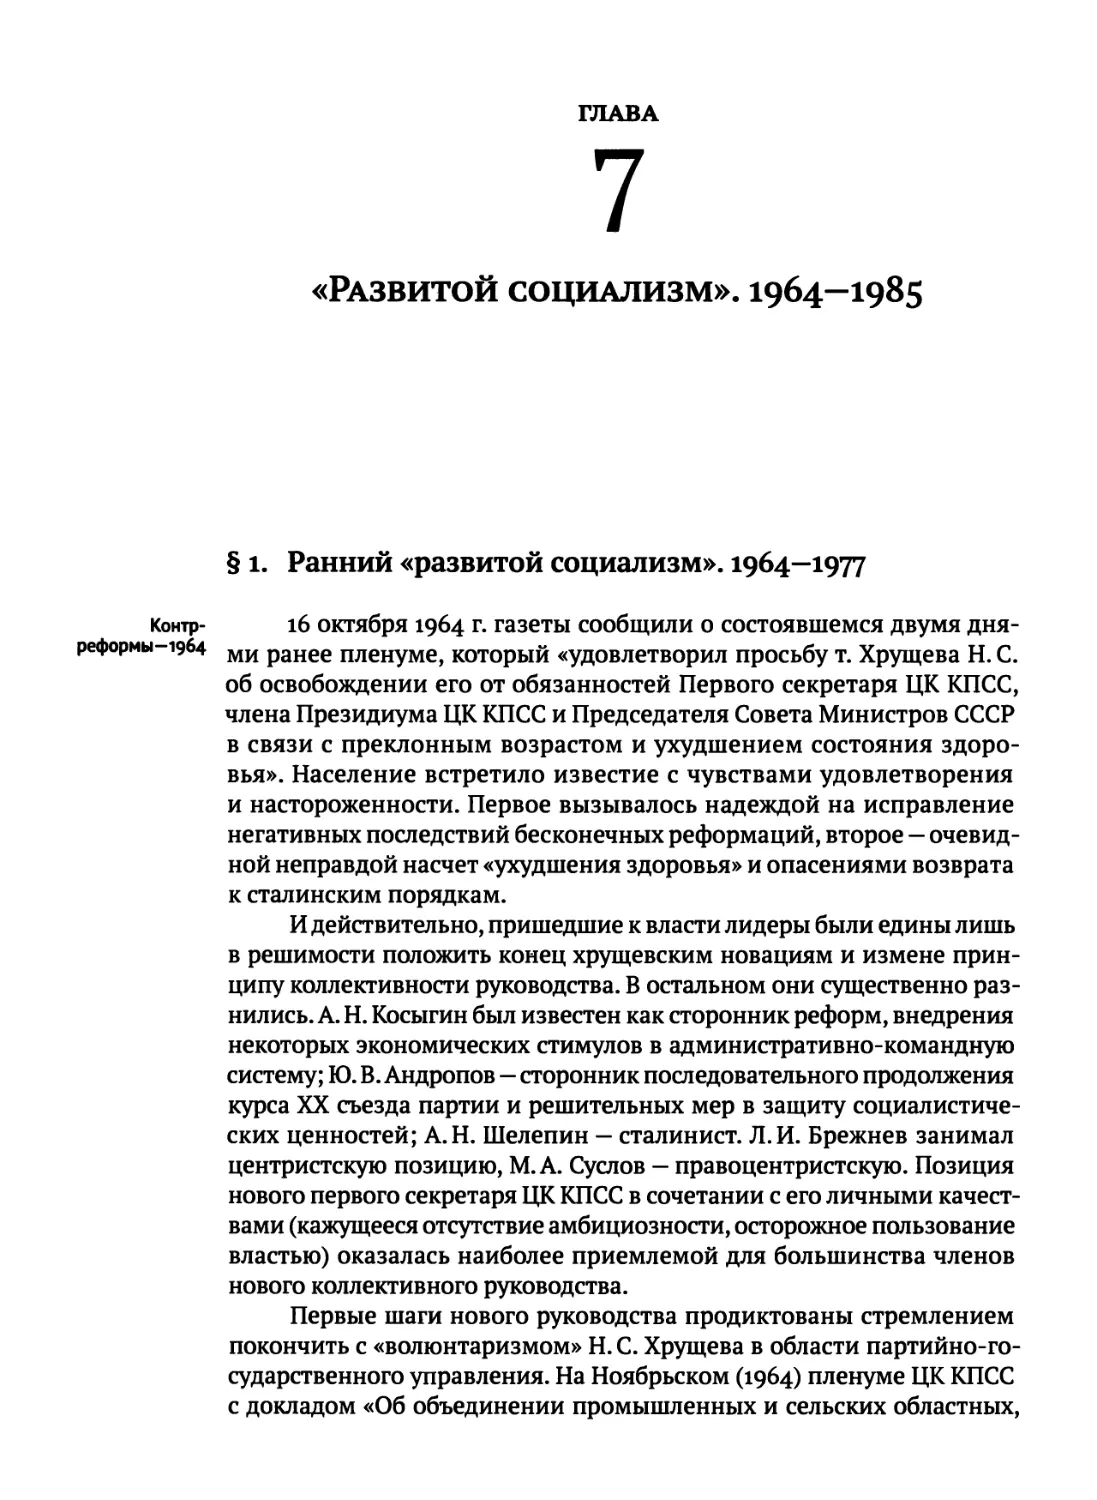 «Развитой социализм». 1964—1985